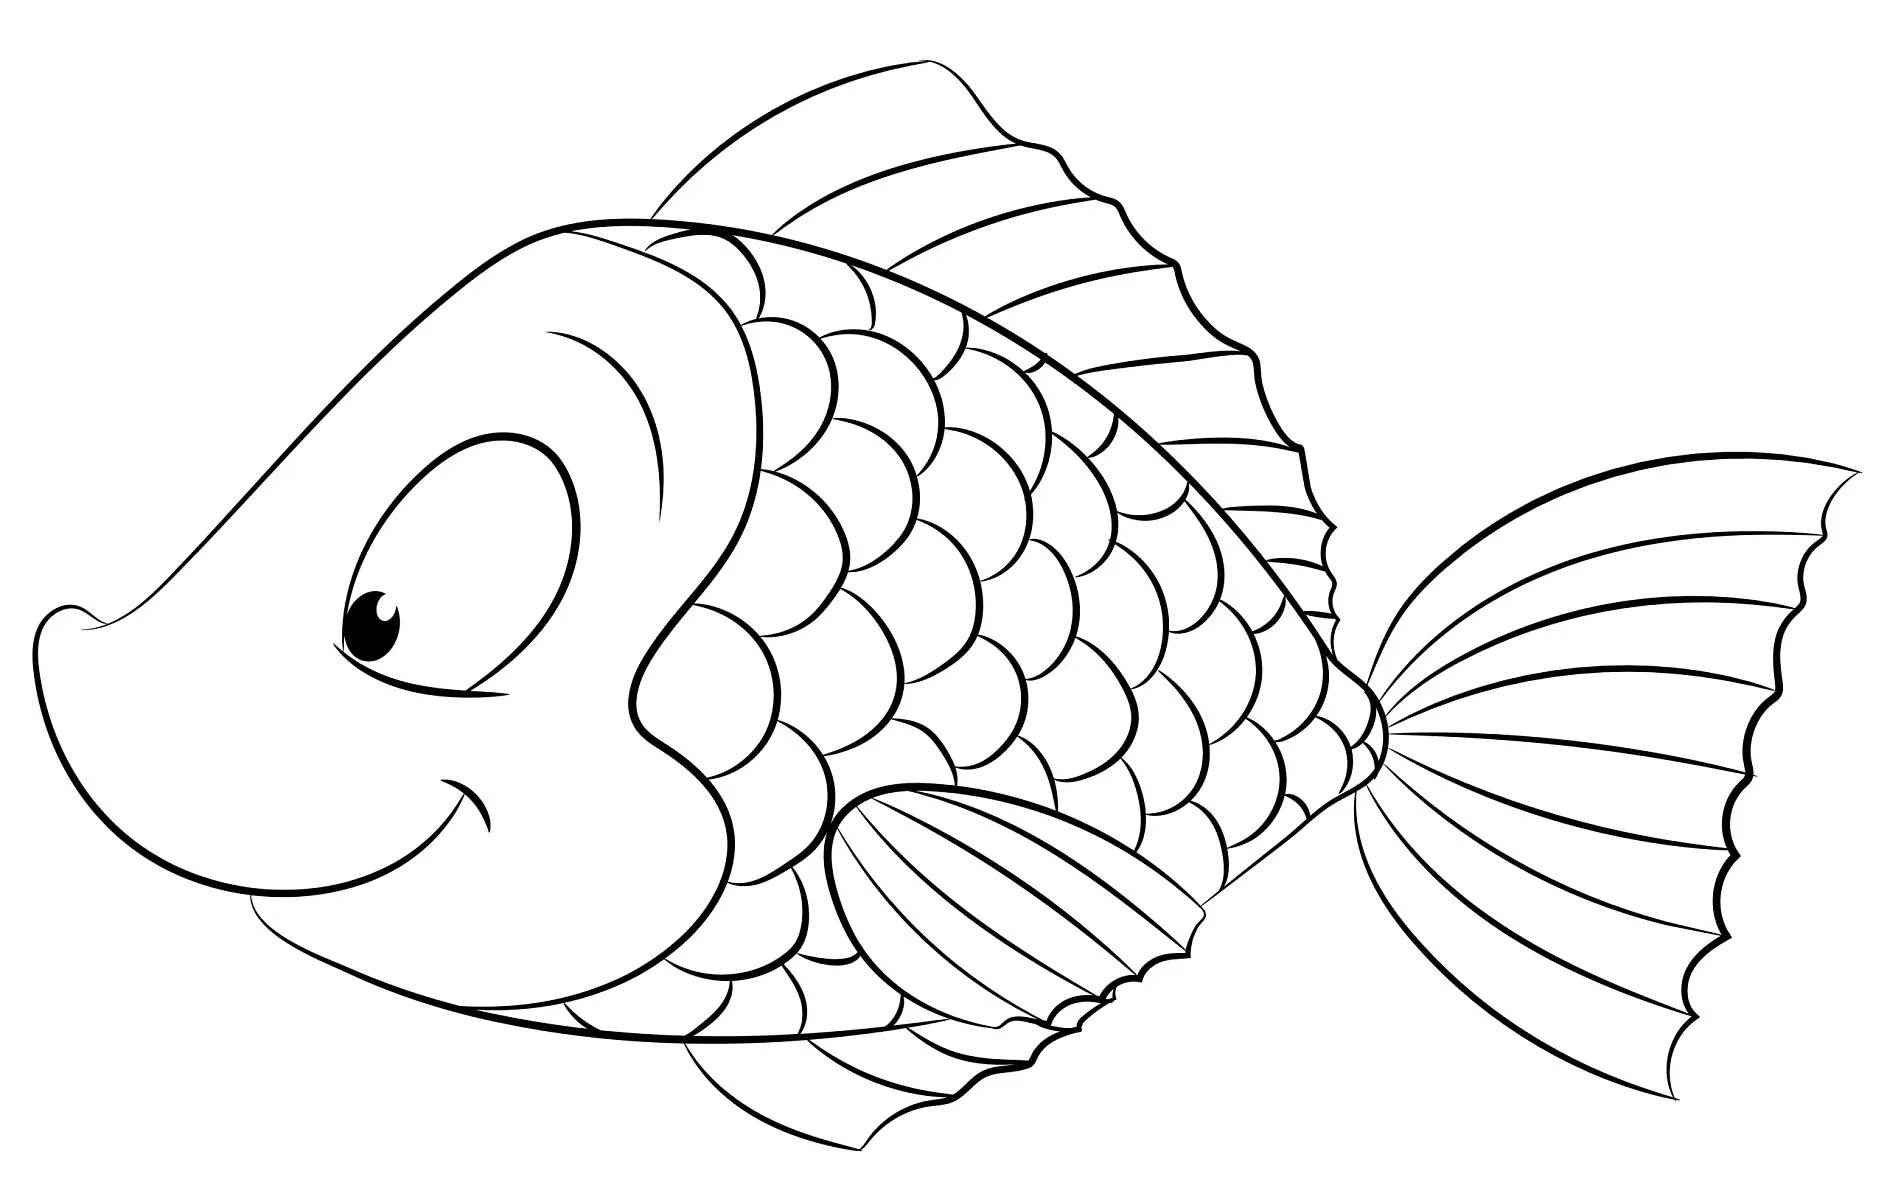 Ausmalbild Fisch mit lächelndem Gesicht und detaillierten Schuppen